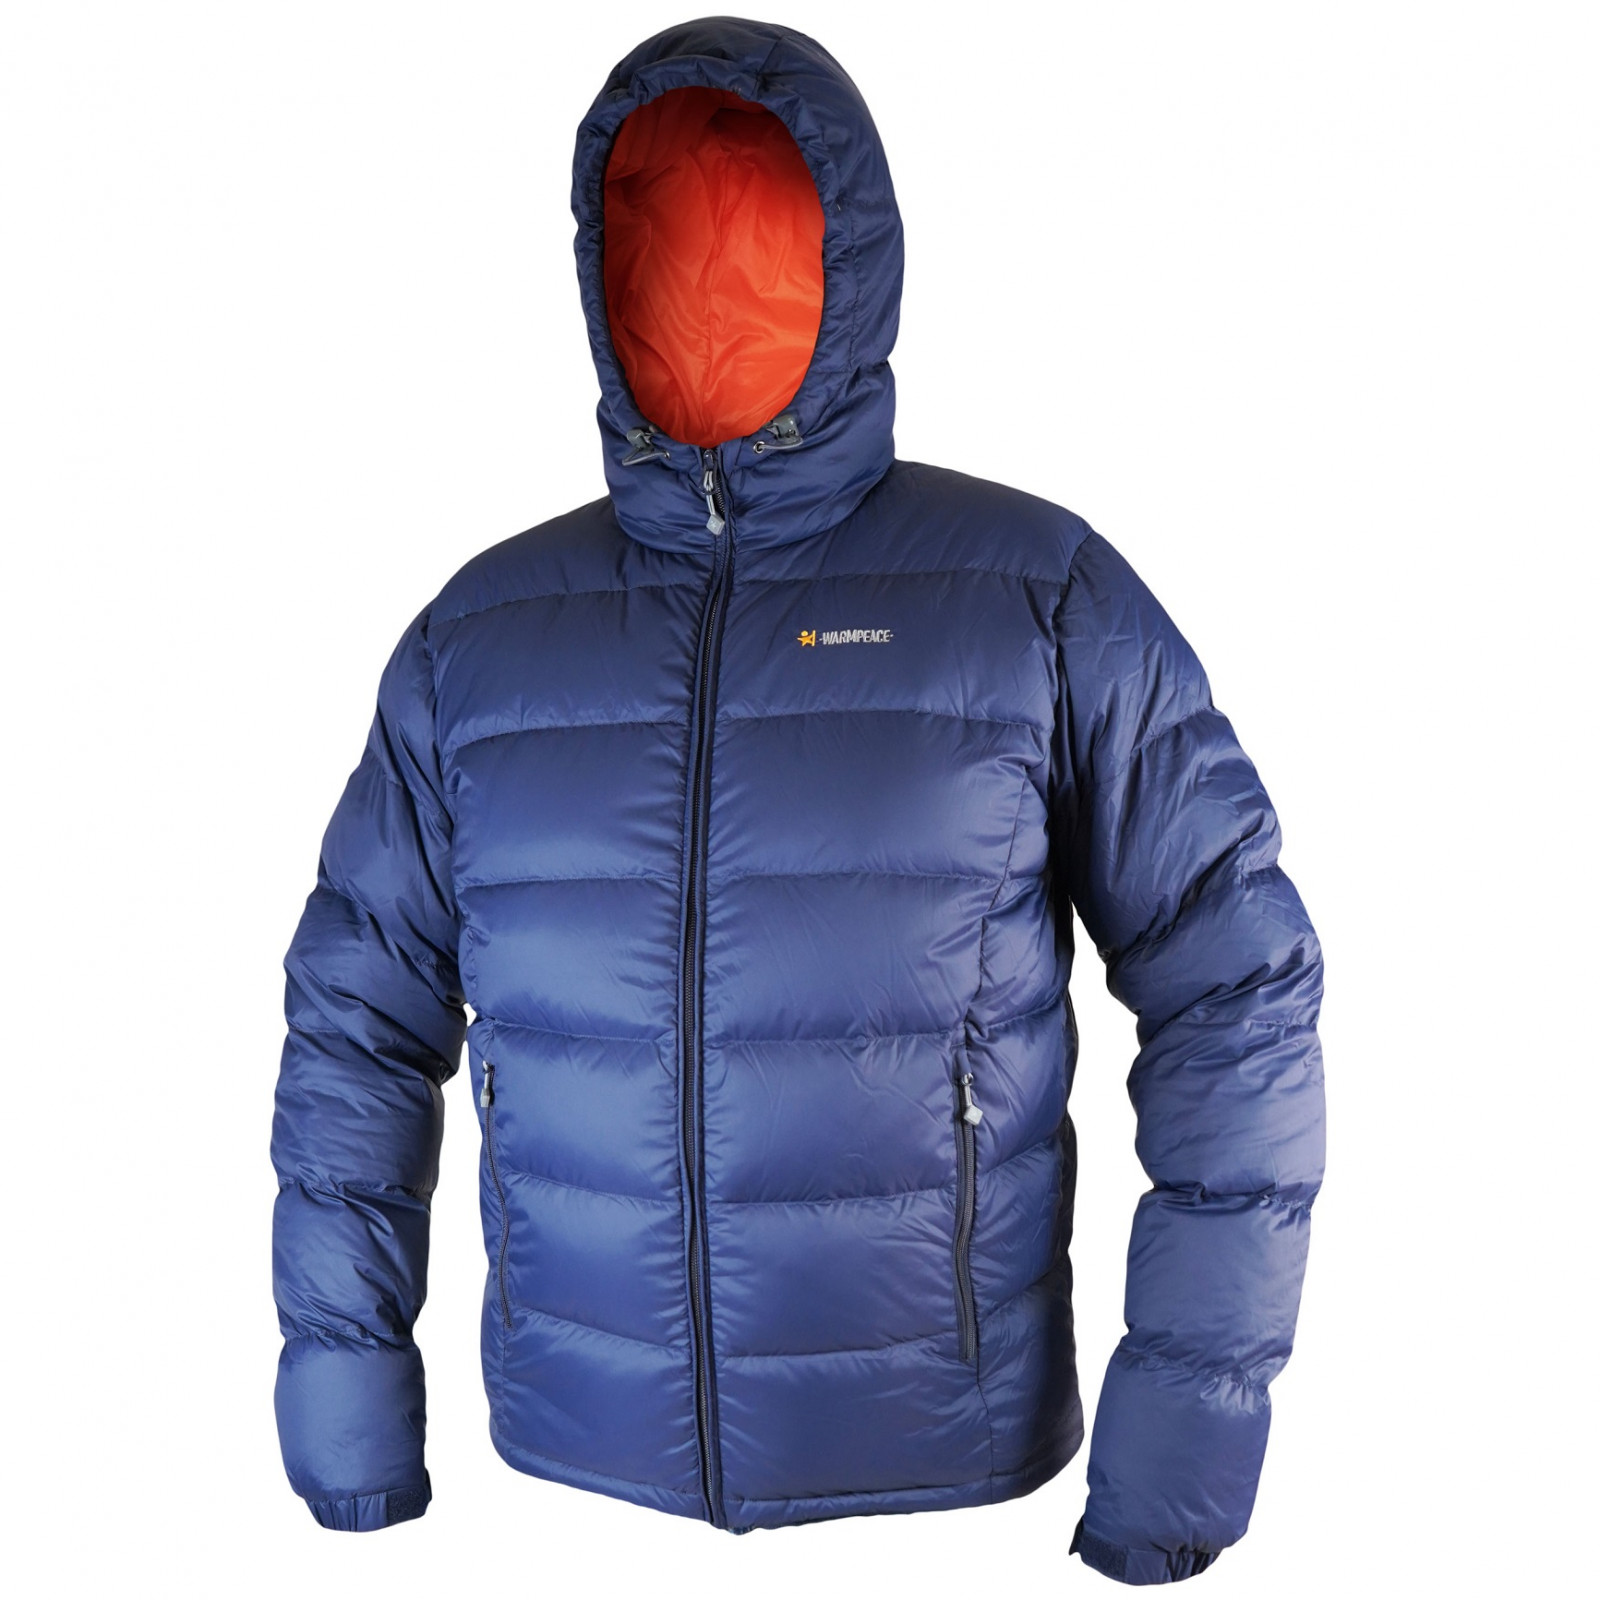 Pánská péřová bunda Warmpeace Crux Velikost: XL / Barva: modrá/oranžová